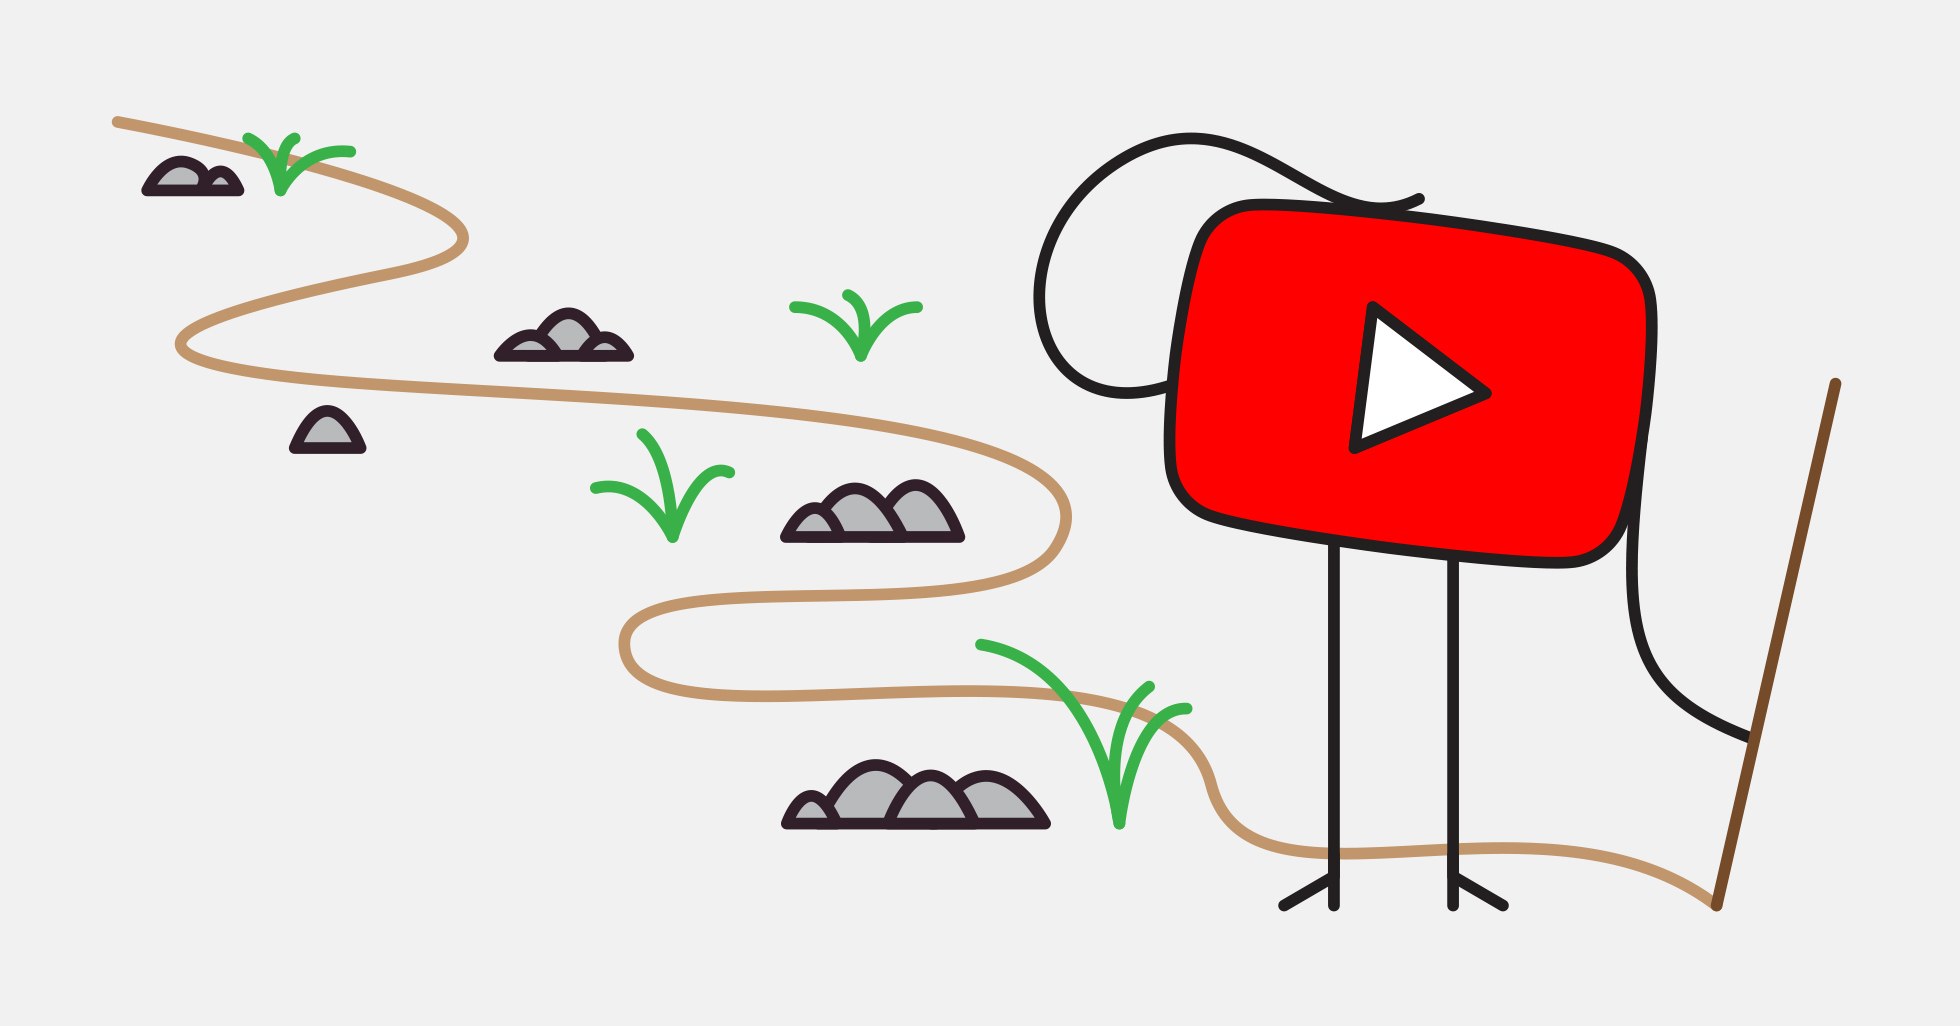 Является ли алгоритм YouTube причиной нарушений психического здоровья?